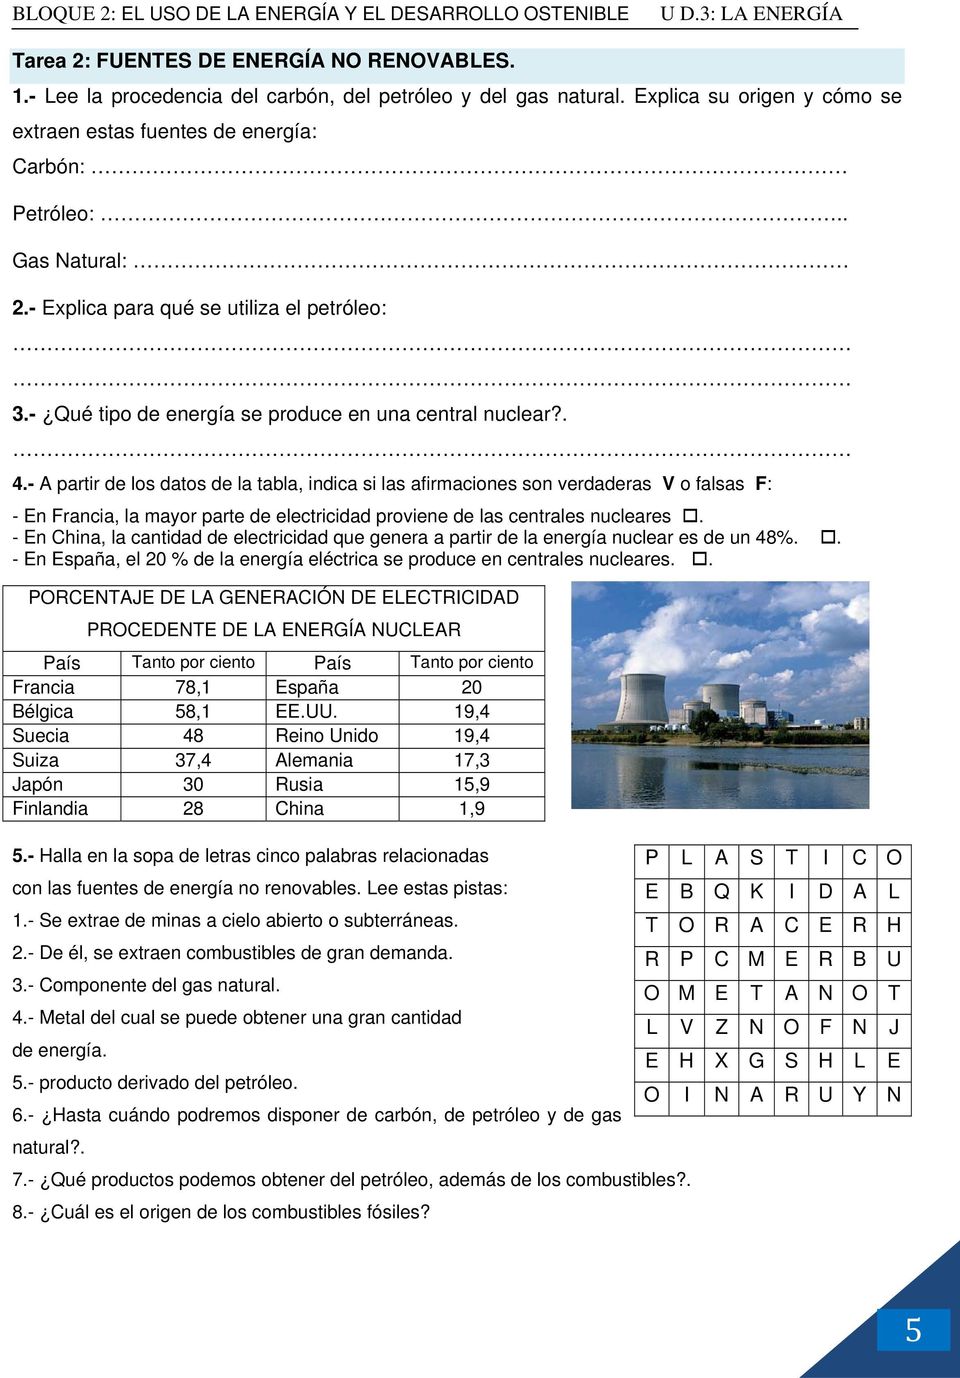 - A partir de los datos de la tabla, indica si las afirmaciones son verdaderas V o falsas F: - En Francia, la mayor parte de electricidad proviene de las centrales nucleares.